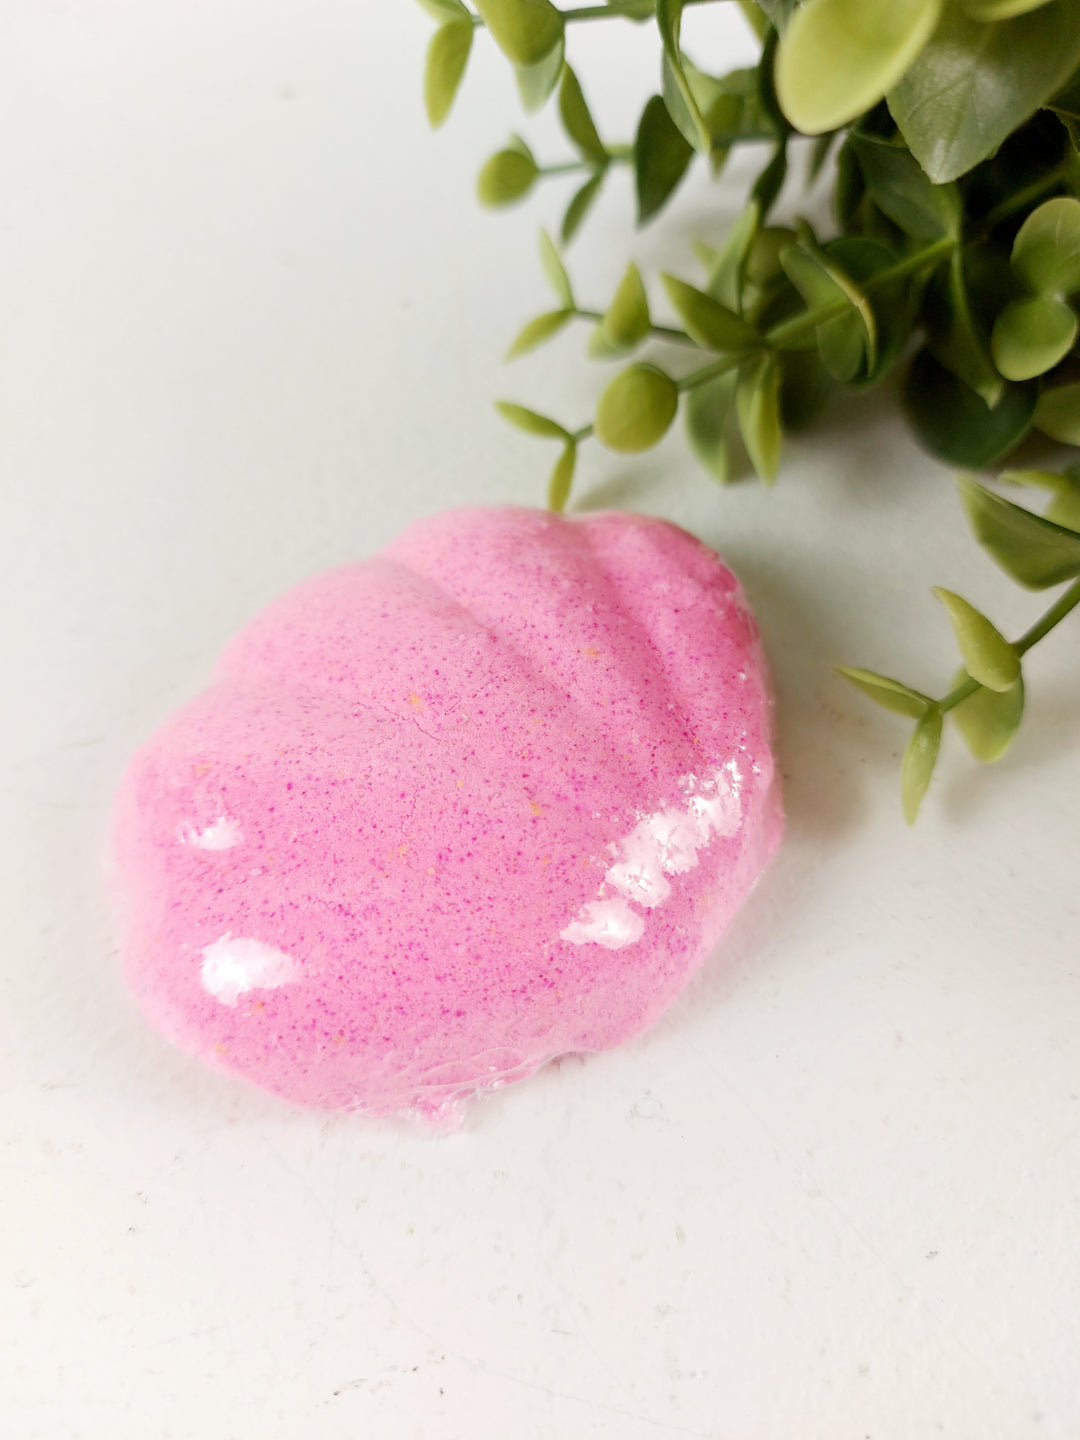 Peachy Clean Soap, Fun Shaped Bath Bombs